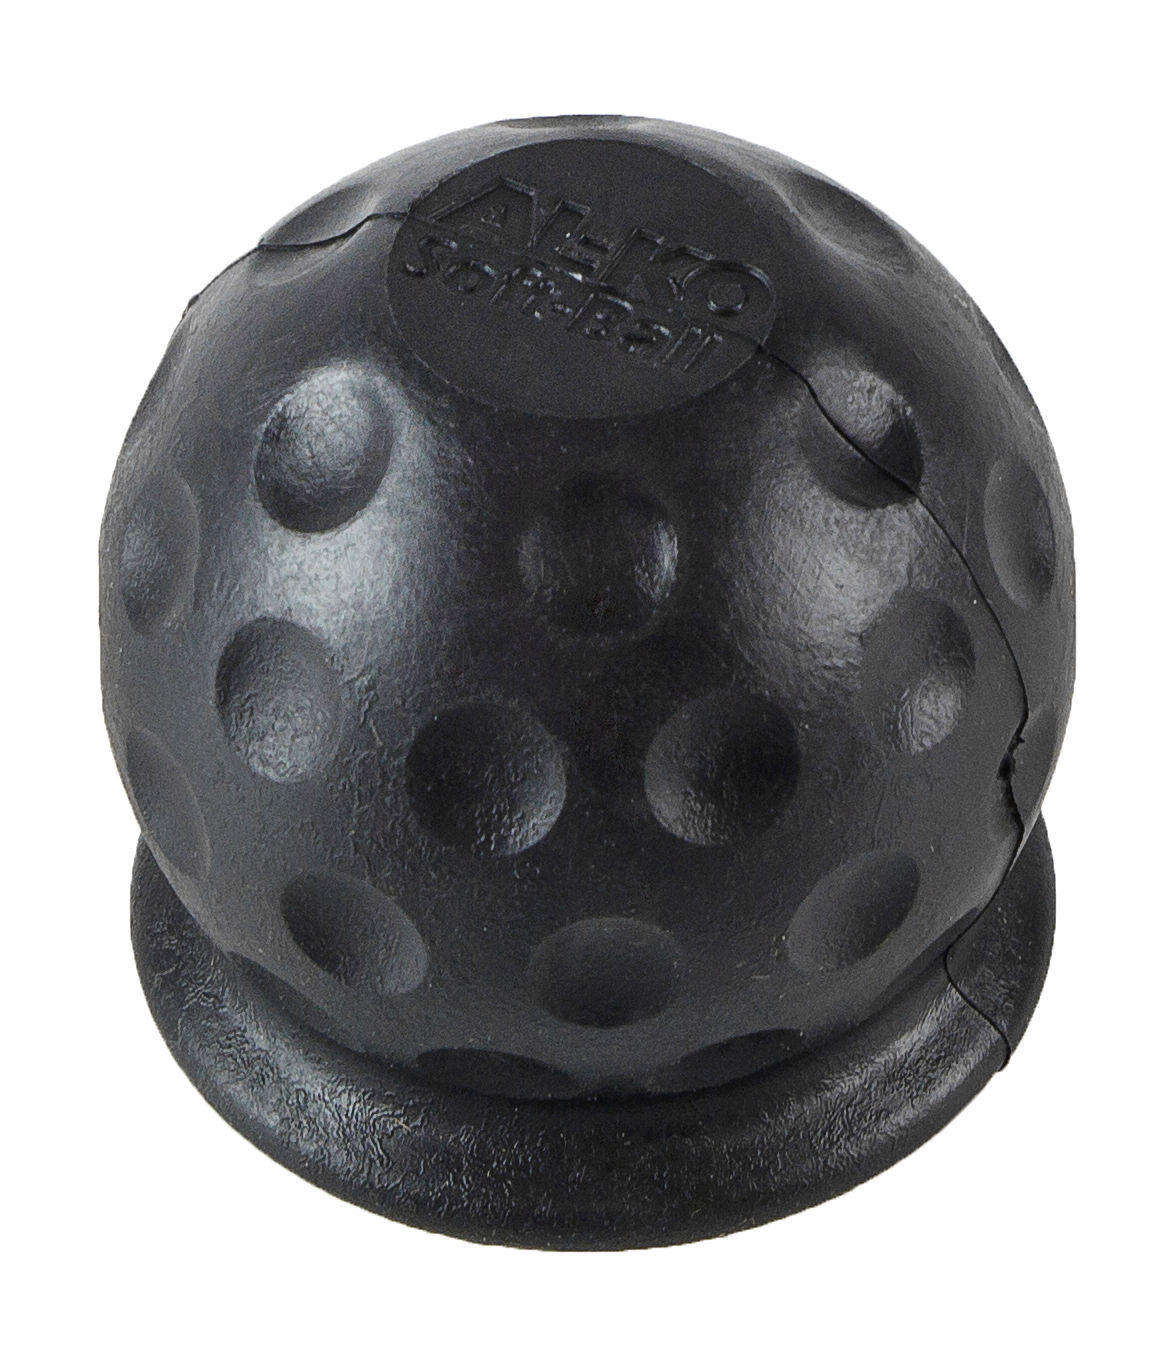 Чехол шара сцепного устройства, AL-KO, черный 1310913